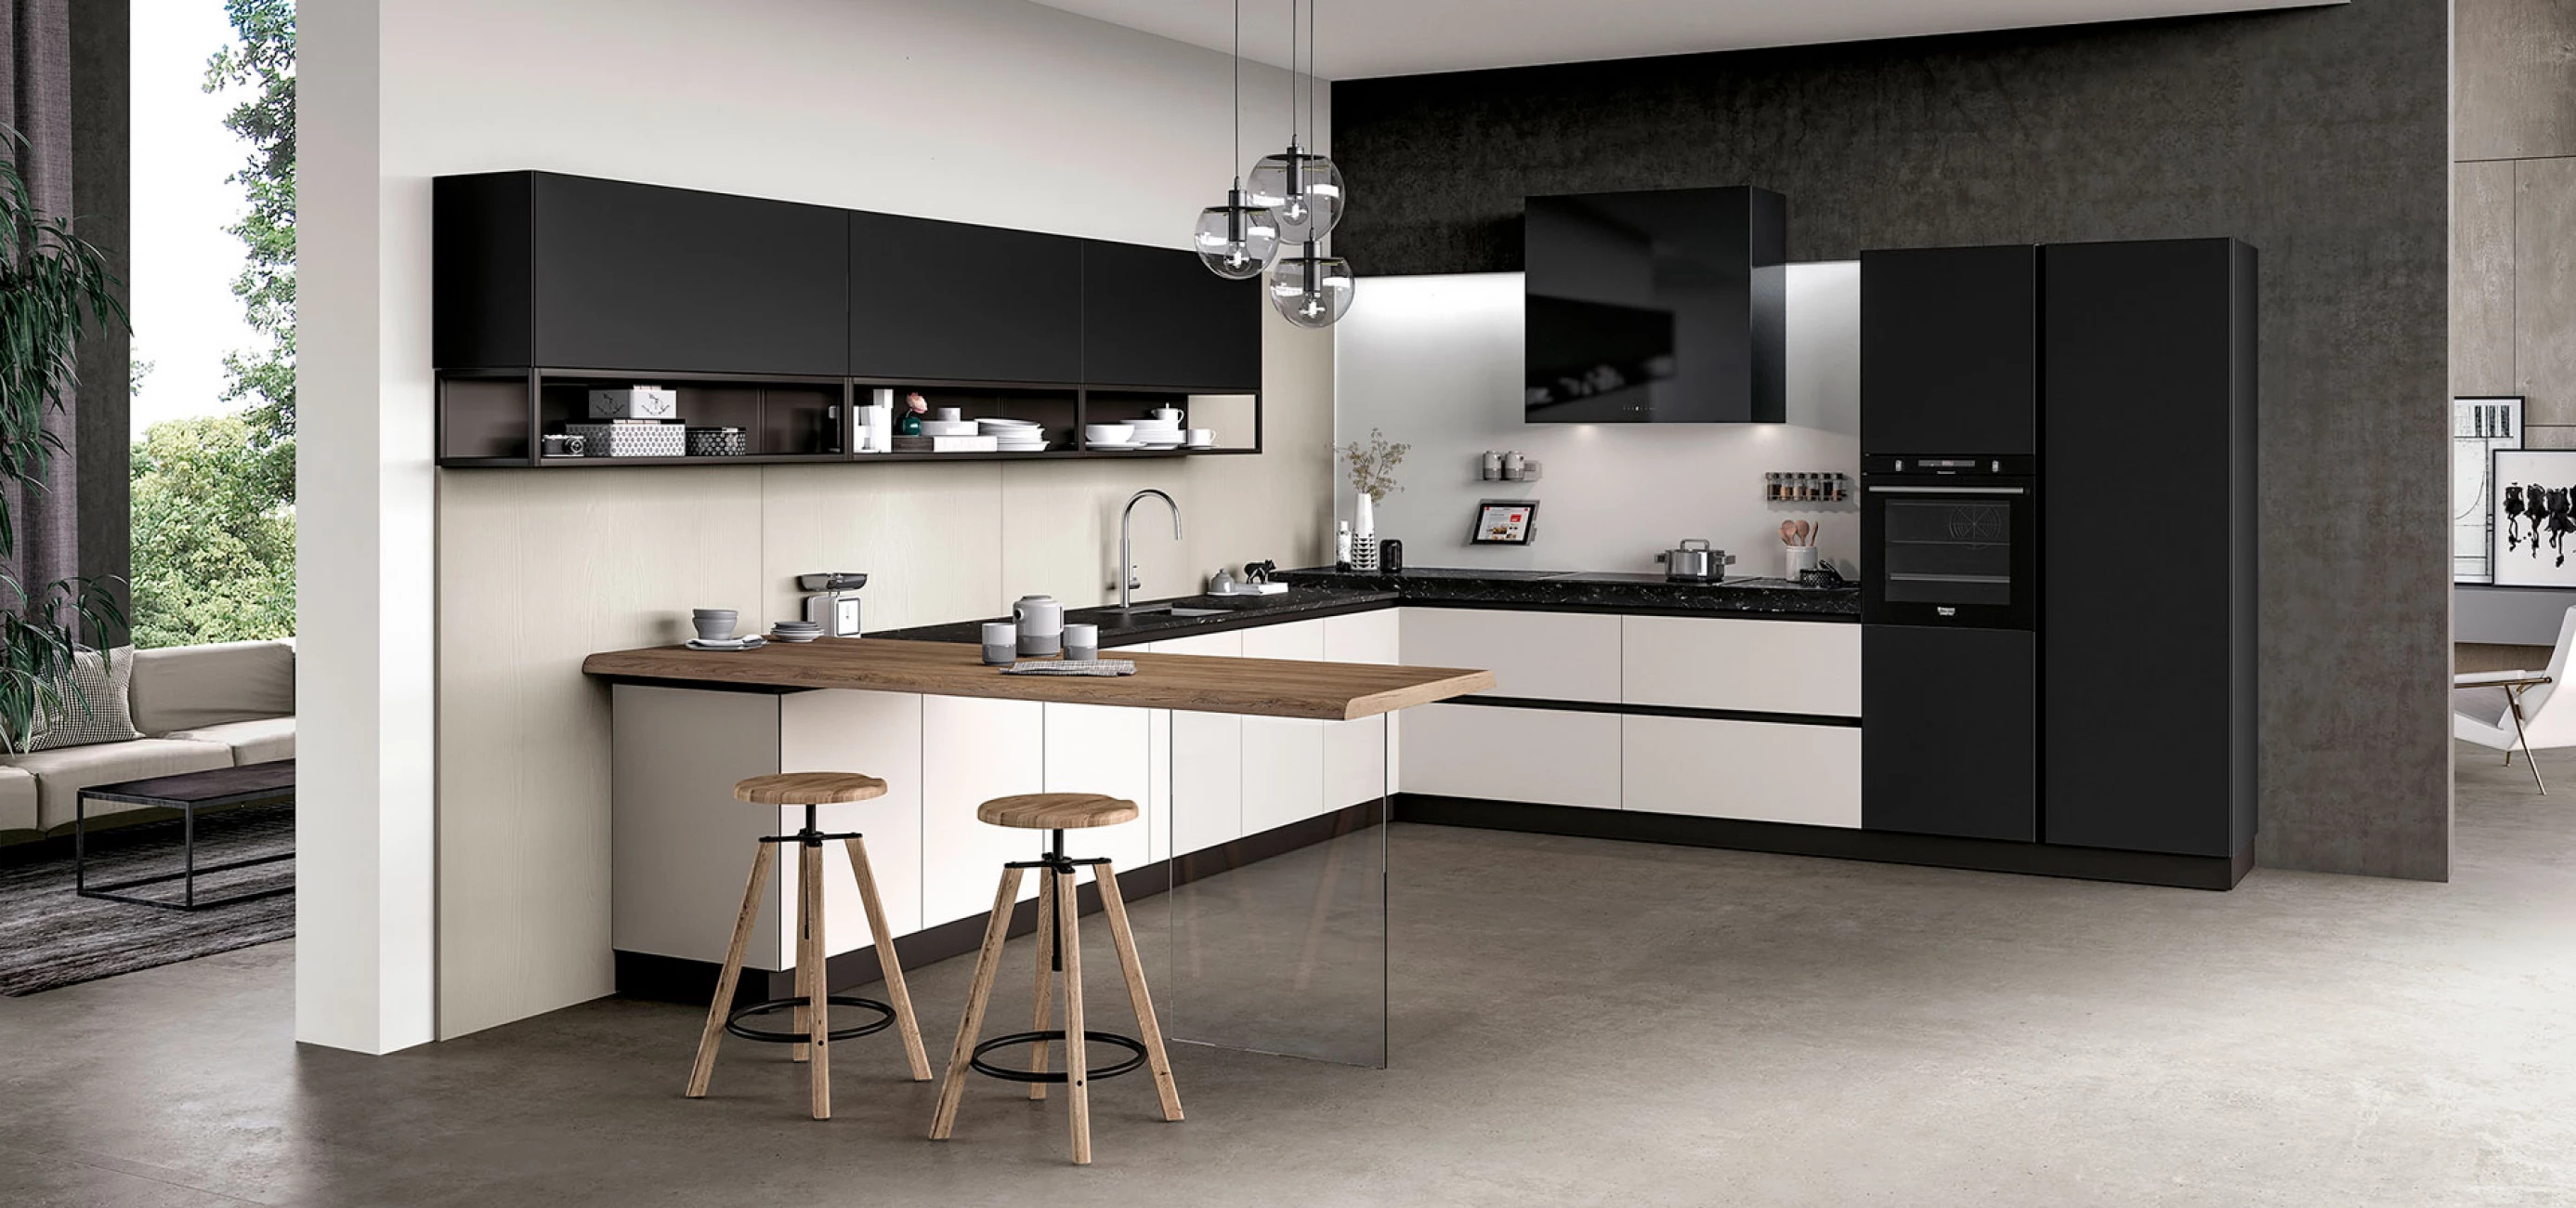 Итальянская кухня GLASS в современном стиле от фабрики ARREDO3 без ручек, в черном и белом цвете, с деревянными табуретками и стеклянным столом